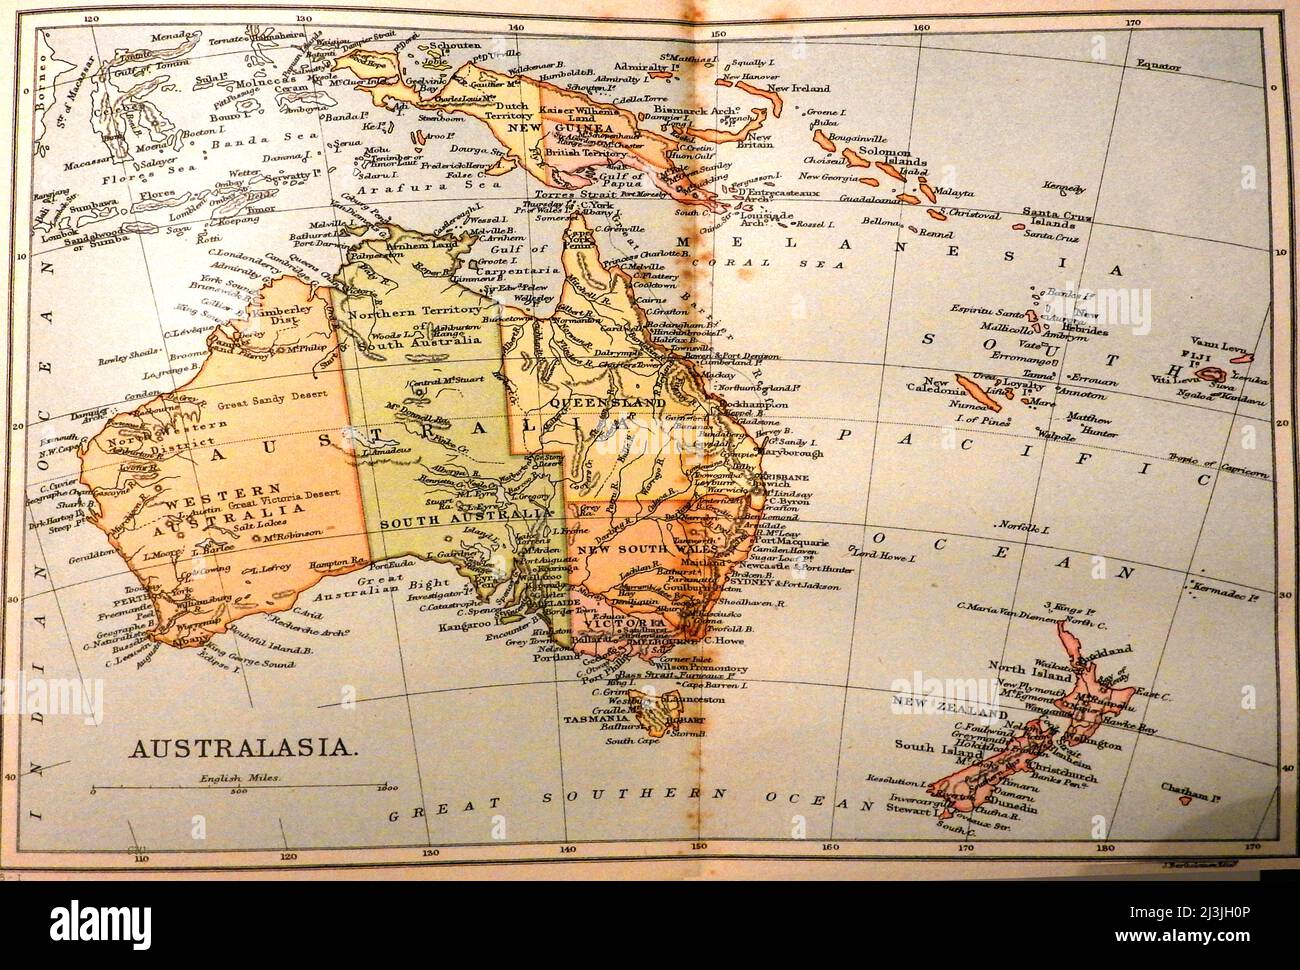 Eine farbige Karte von Australasien (Australien, Neuseeland, Neuguinea und Inseln) aus dem späten 19.. Jahrhundert vor der Gründung der Stadt Alice Springs und vor der Gründung des Northern Territory als separater Staat. Die Karte zeigt Flüsse, Eisenbahnen und Entfernungen in englischen Meilen Stockfoto